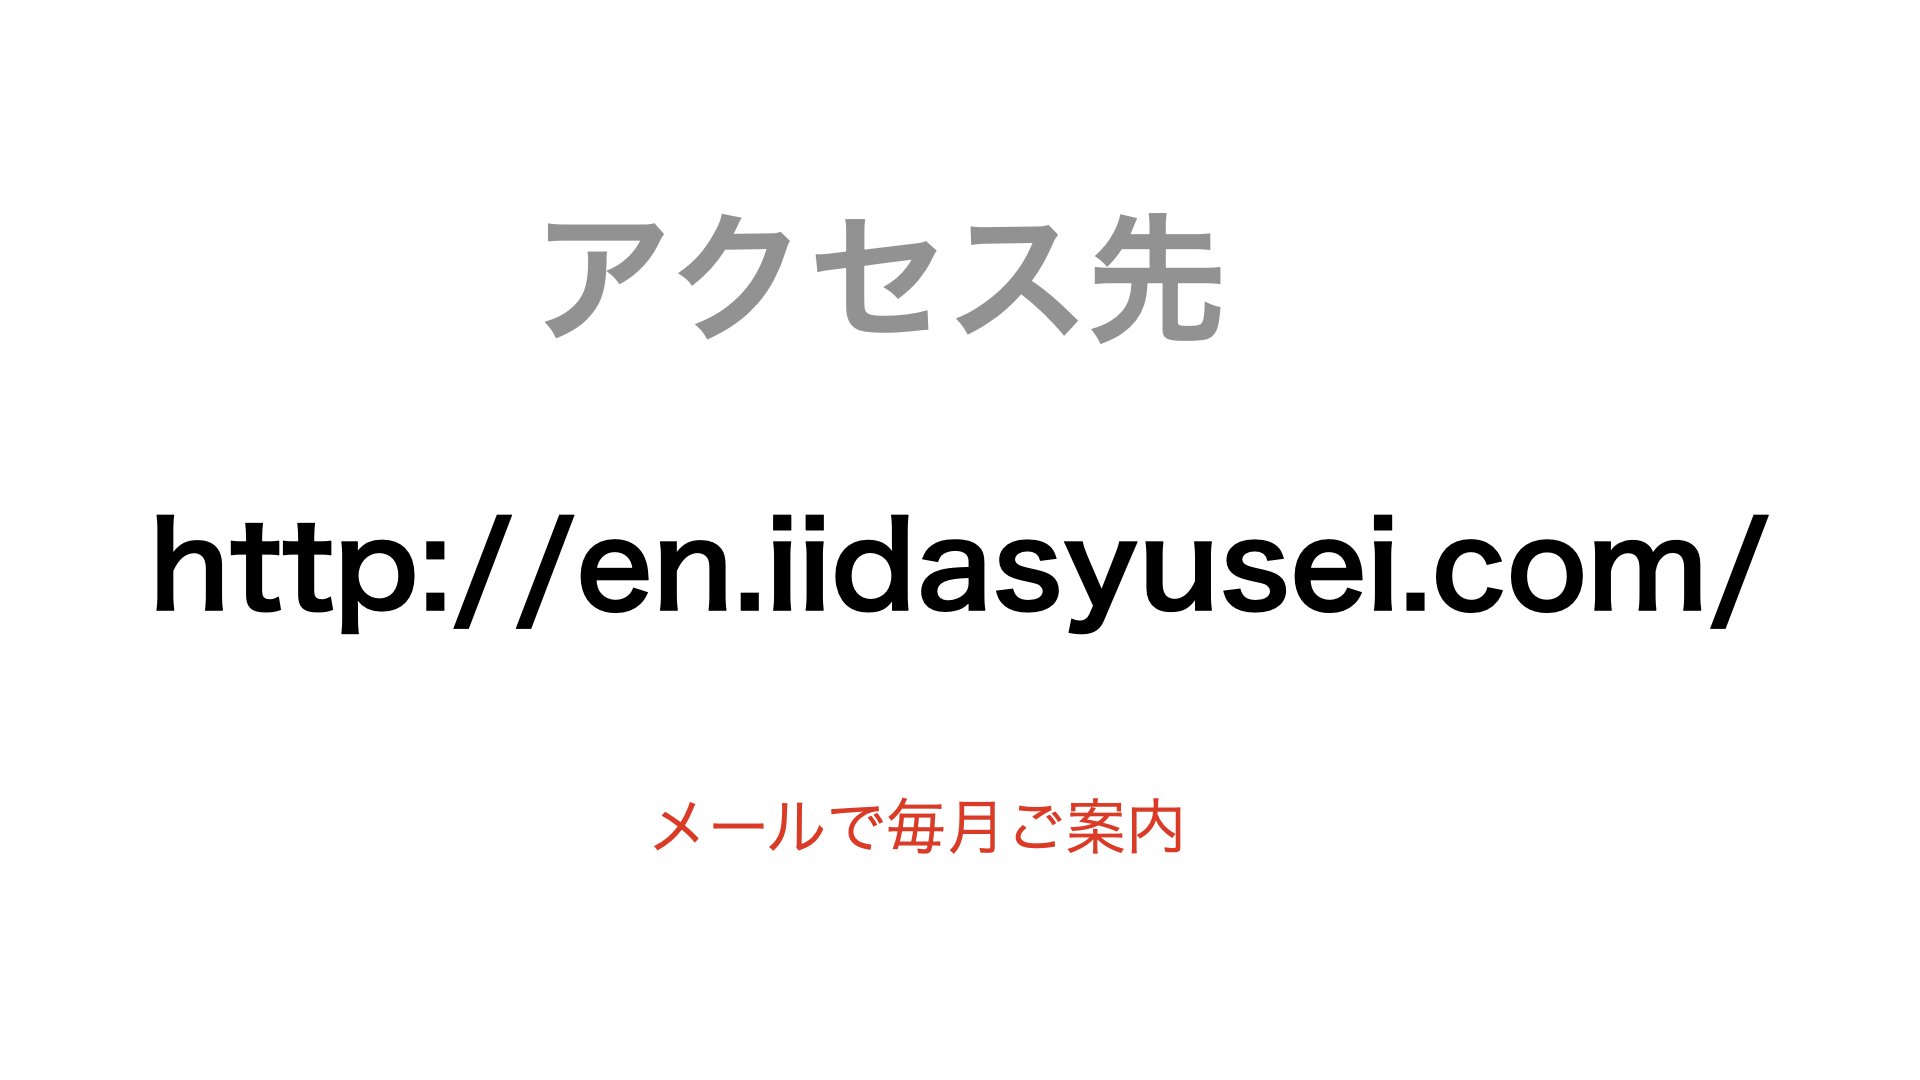 例会申し込みシステムの導入資料アクセス先専用サイトhttp://en.iidasyusei.com